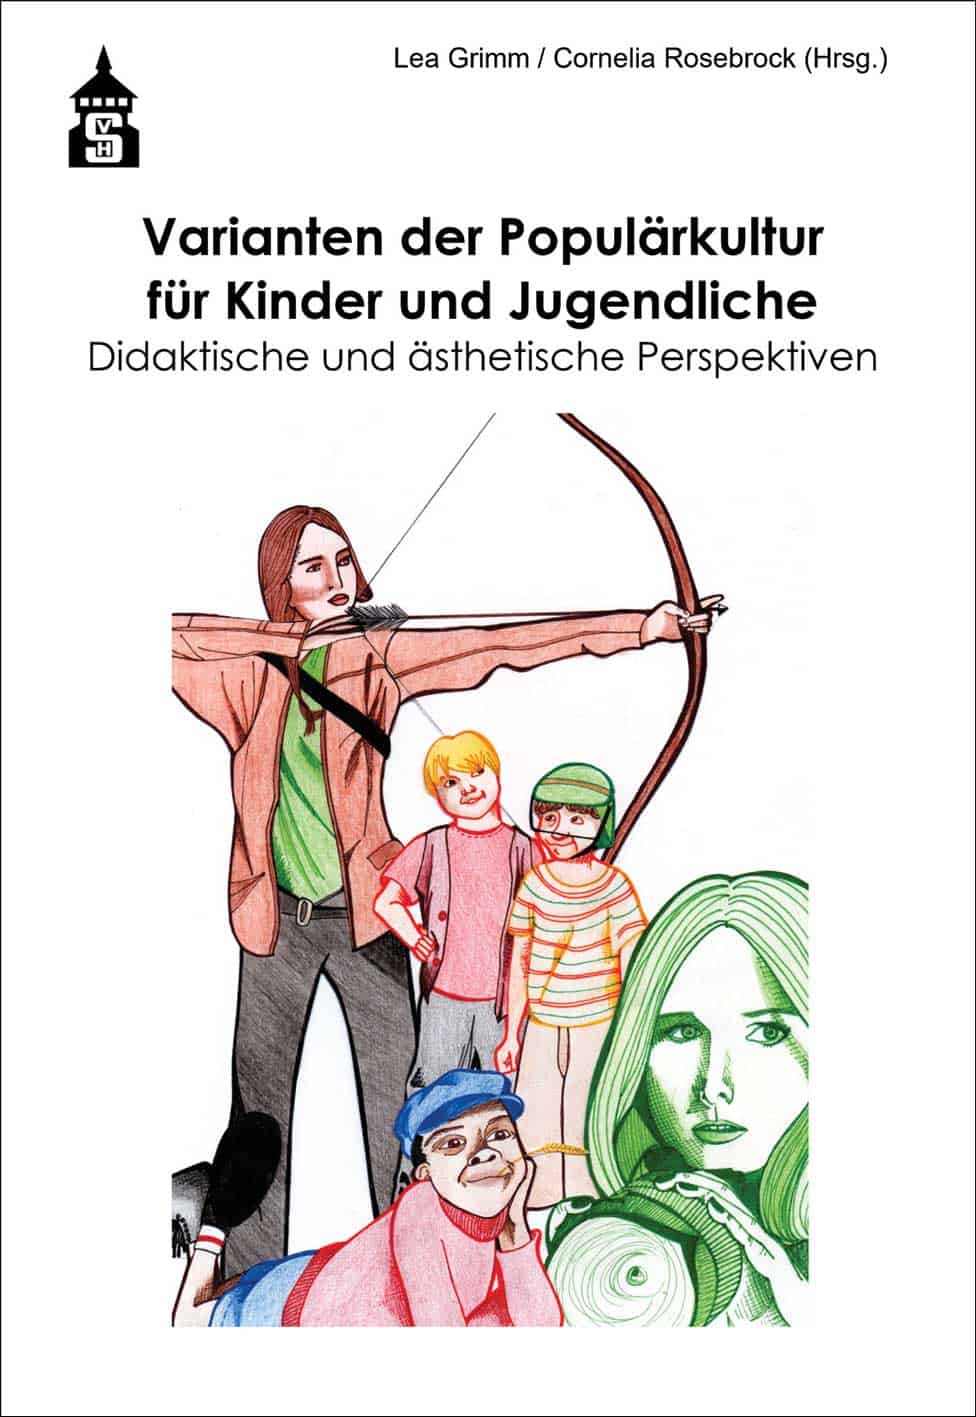 Grimm, Lea/Rosebrock, Cornelia (Hrsg.): Varianten der Populärkultur für Kinder und Jugendliche